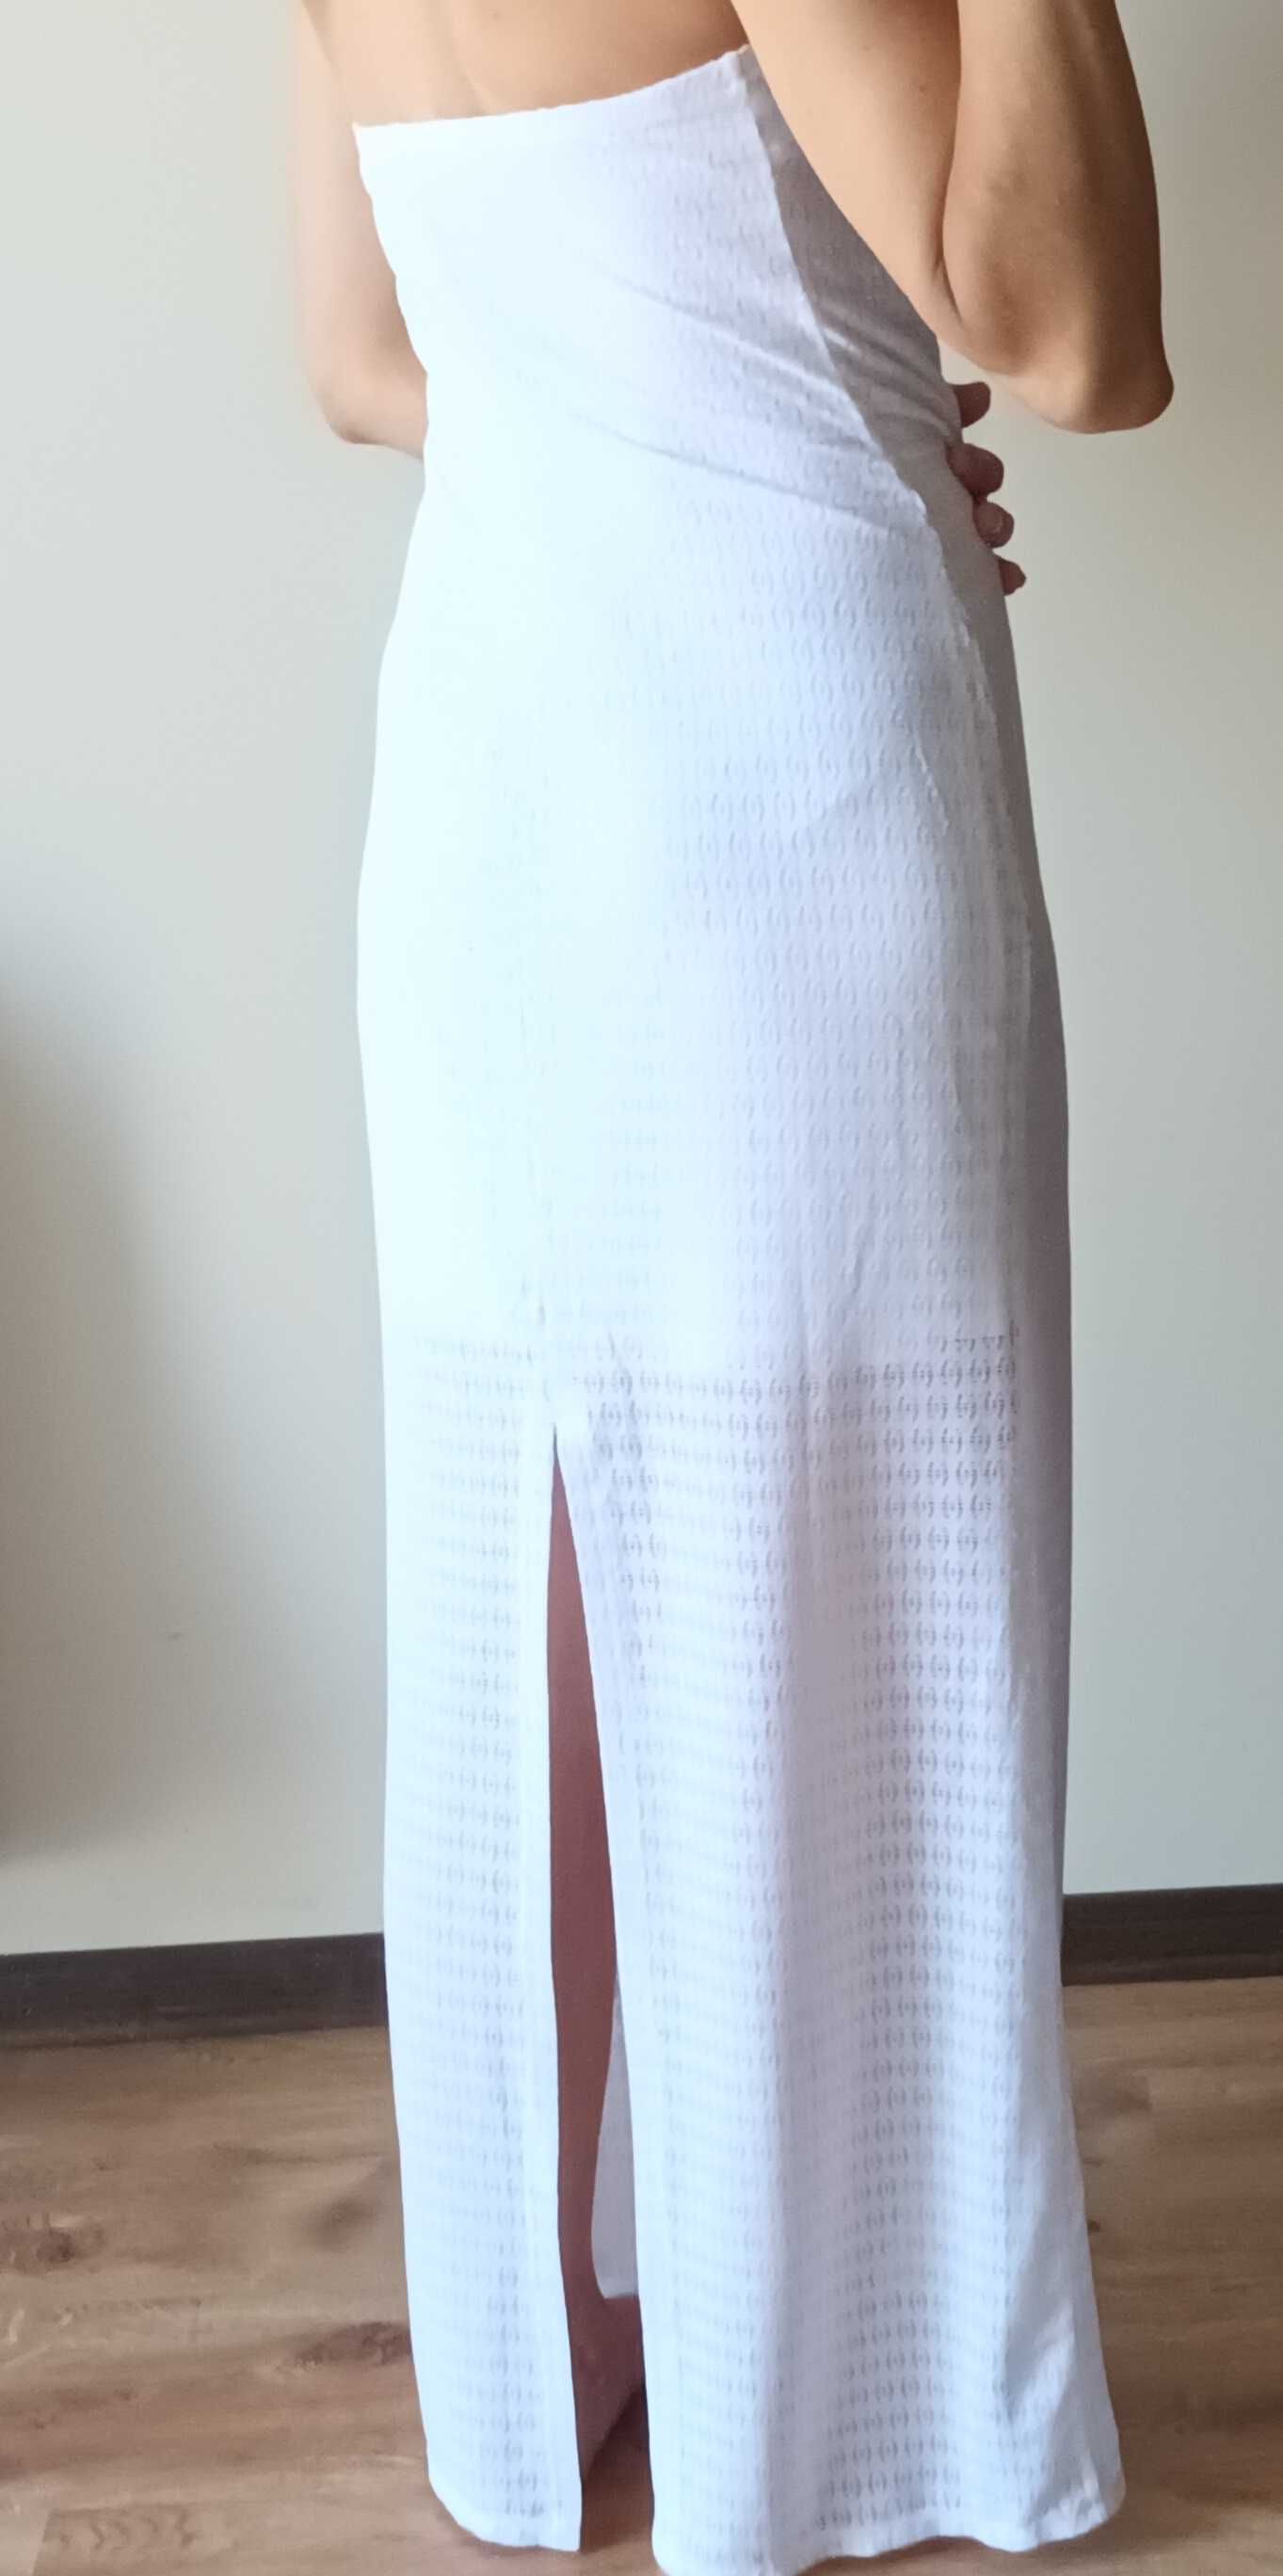 Calzedonia koronkowa sukienka bez rękawów rozmiar 36-38